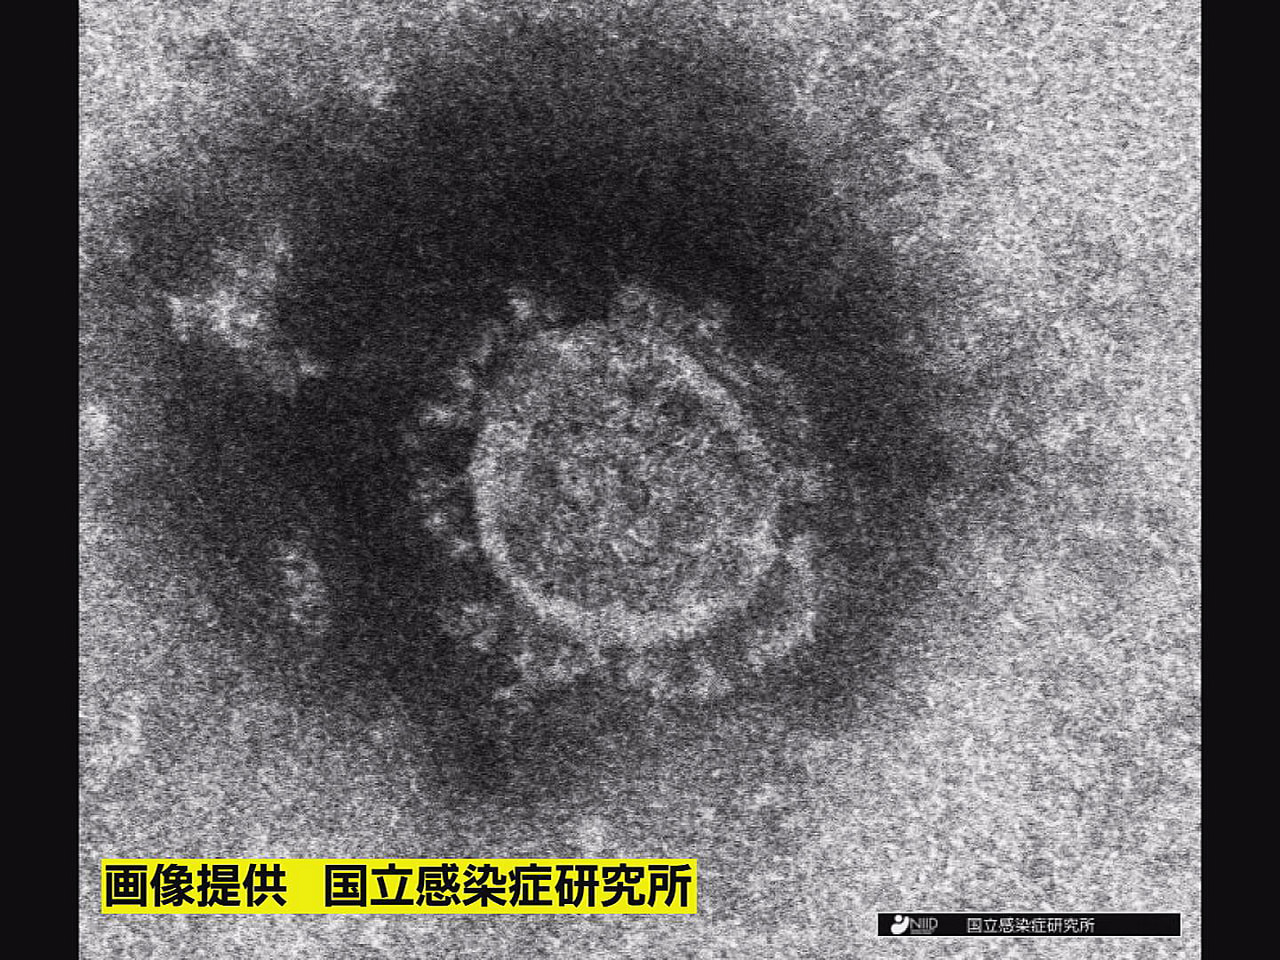 岐阜県と岐阜市は２７日、新型コロナウイルス感染者が新たに５５６人、死者が１人確認...